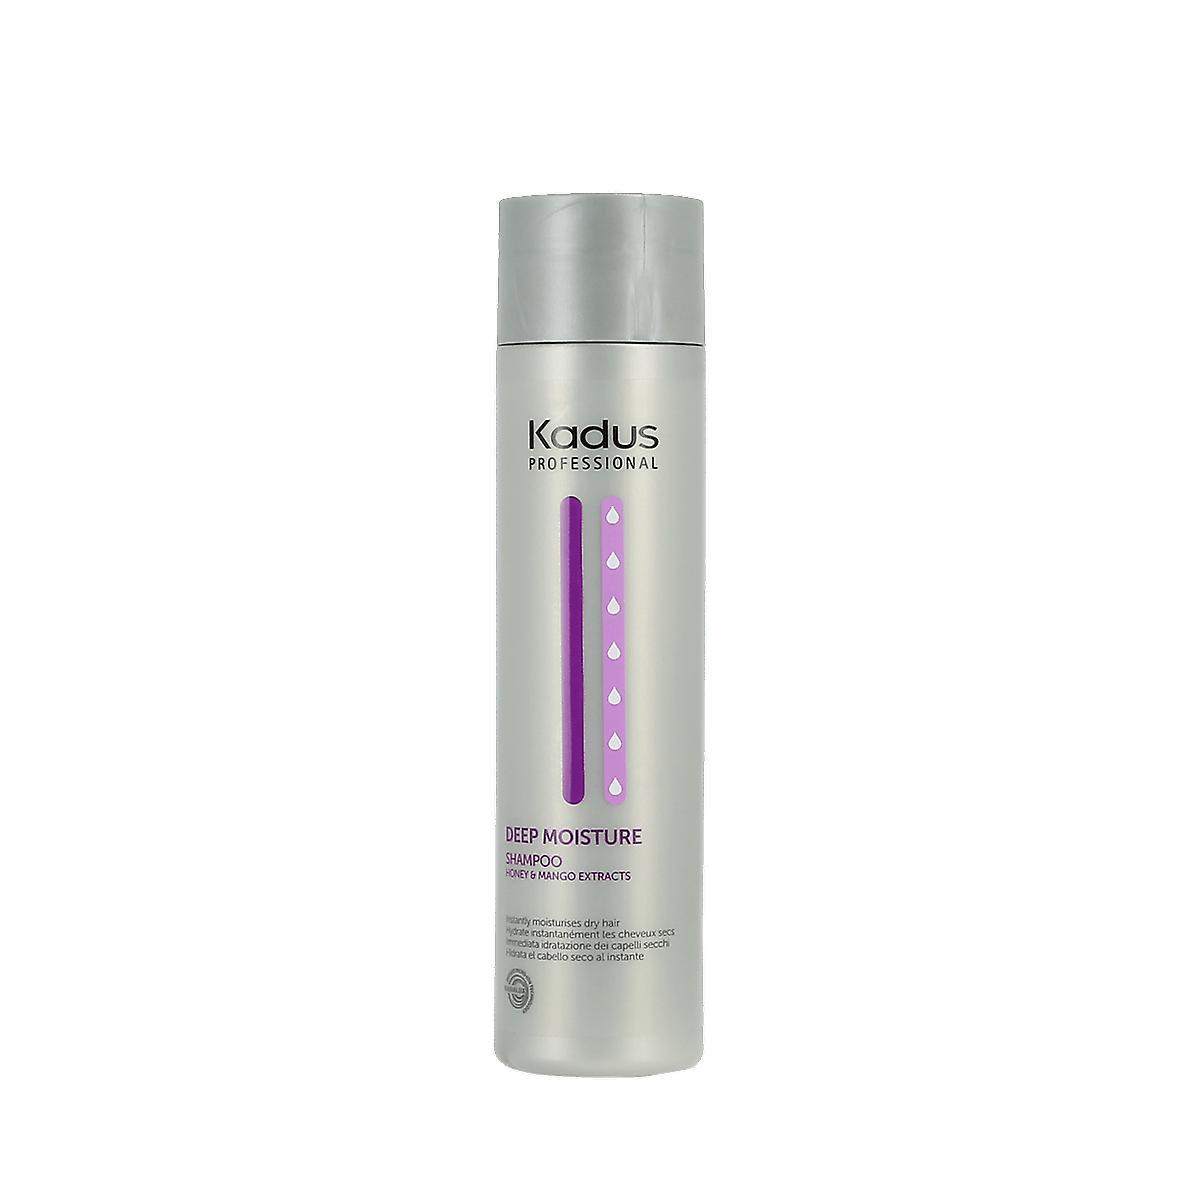 Kadus Deep Moisture Shampoo (250ml) - Hair Care